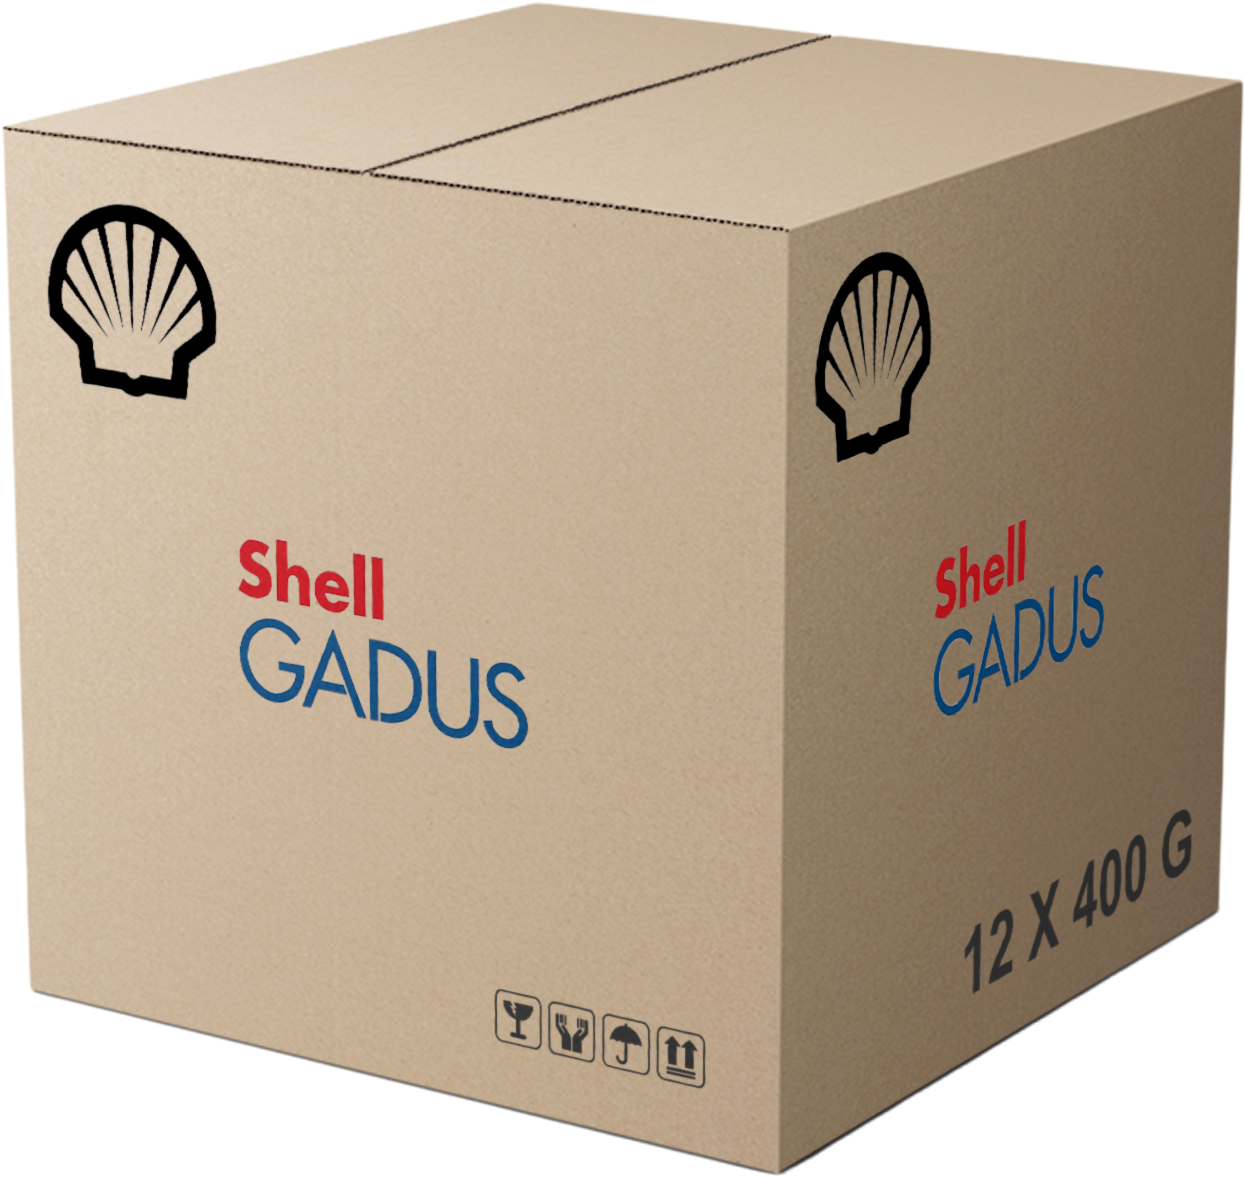 Shell Gadus S2 V100 2, 12 x 400 gr